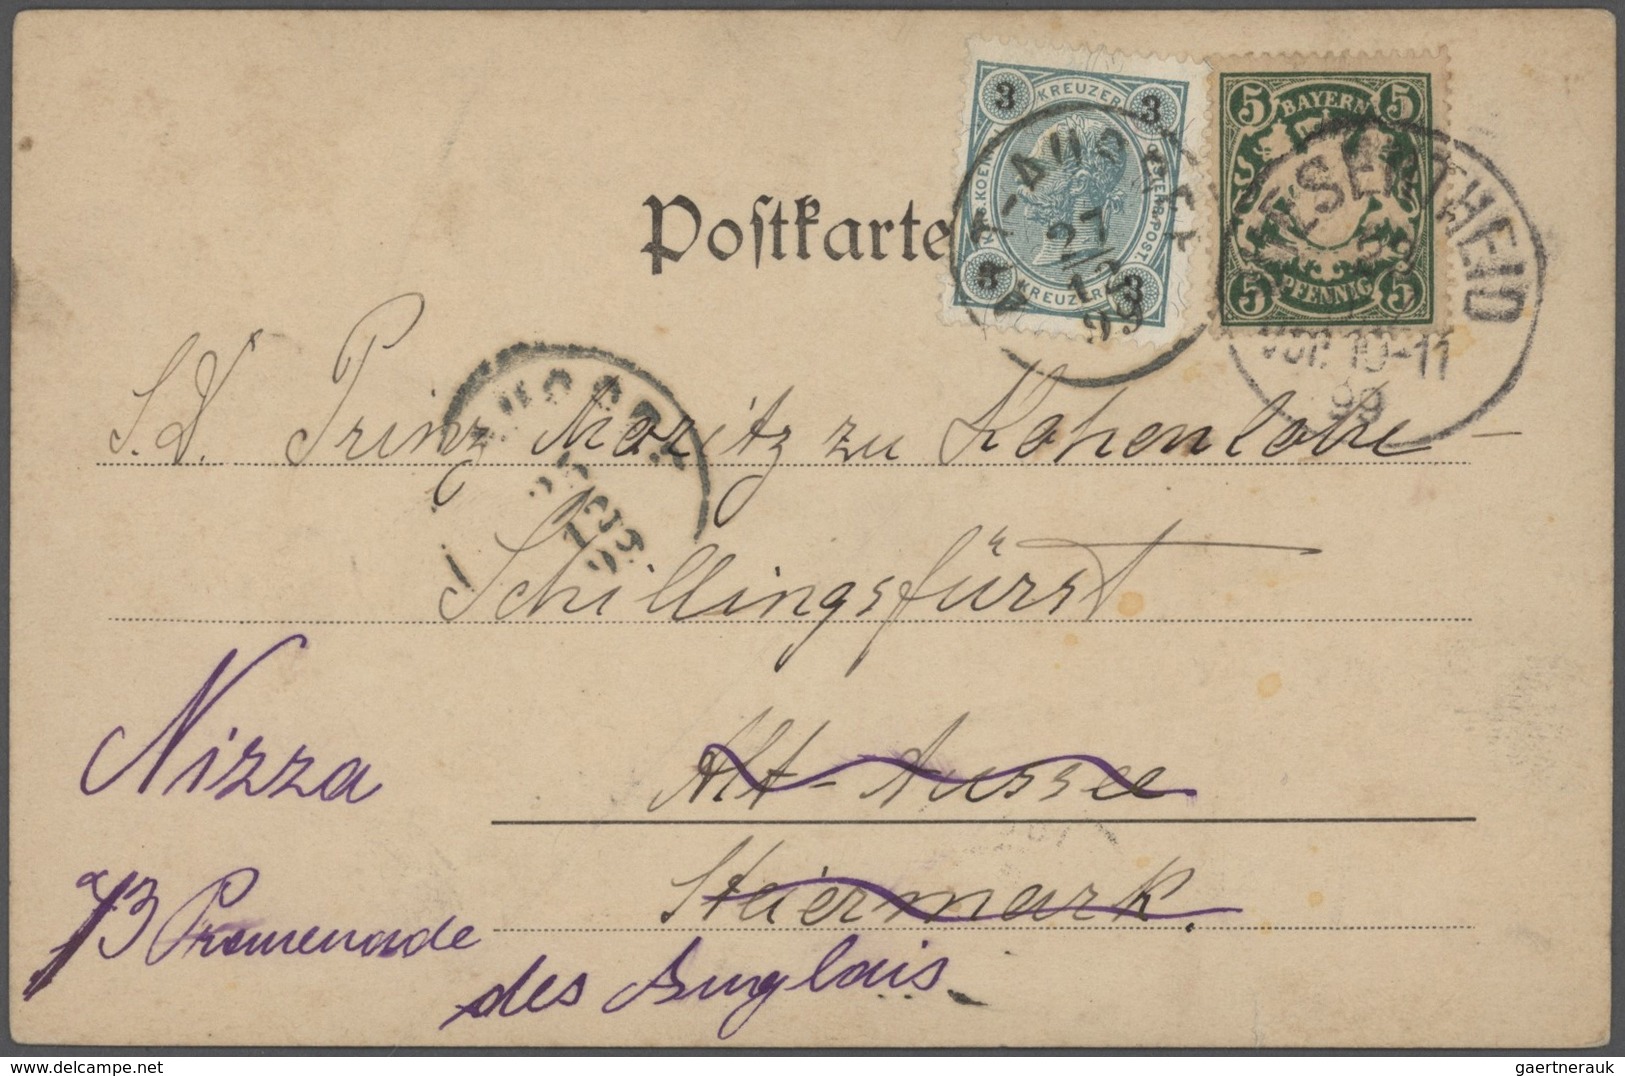 Bayern - Marken und Briefe: 1875/1920 Schöner Posten von 37 un(ter)frankierten Bayern-Belegen mit NA